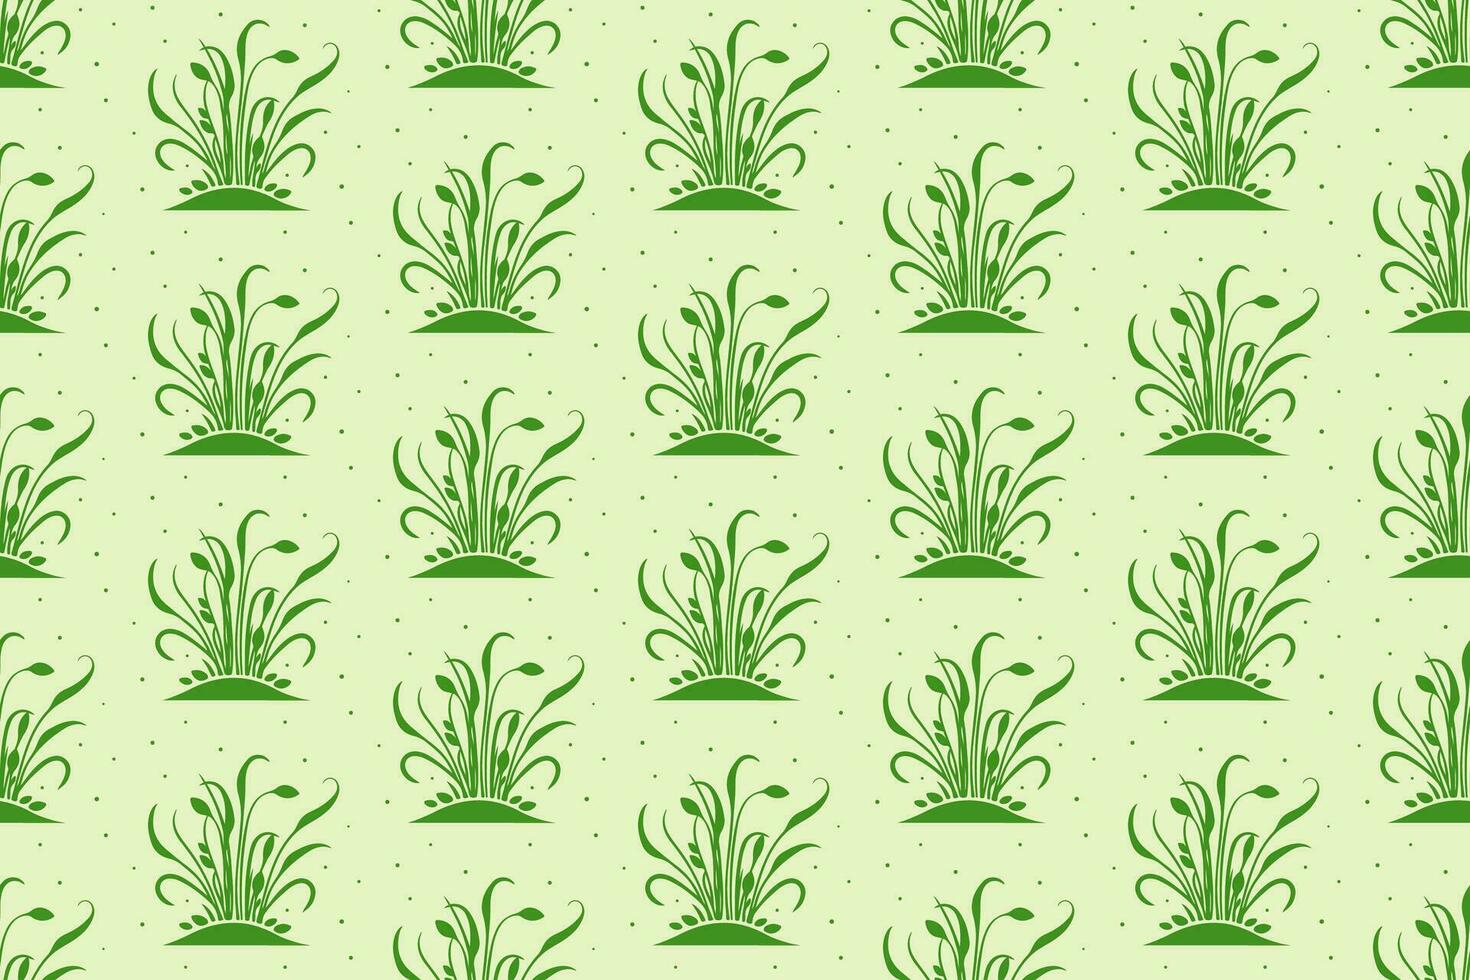 Microgreens Vektor nahtlos Muster. Grün Farbe Hintergrund. gesund organisch Essen und Frühling Themen. zum Verpackung Papier, Marke, Hintergrund und Textil-